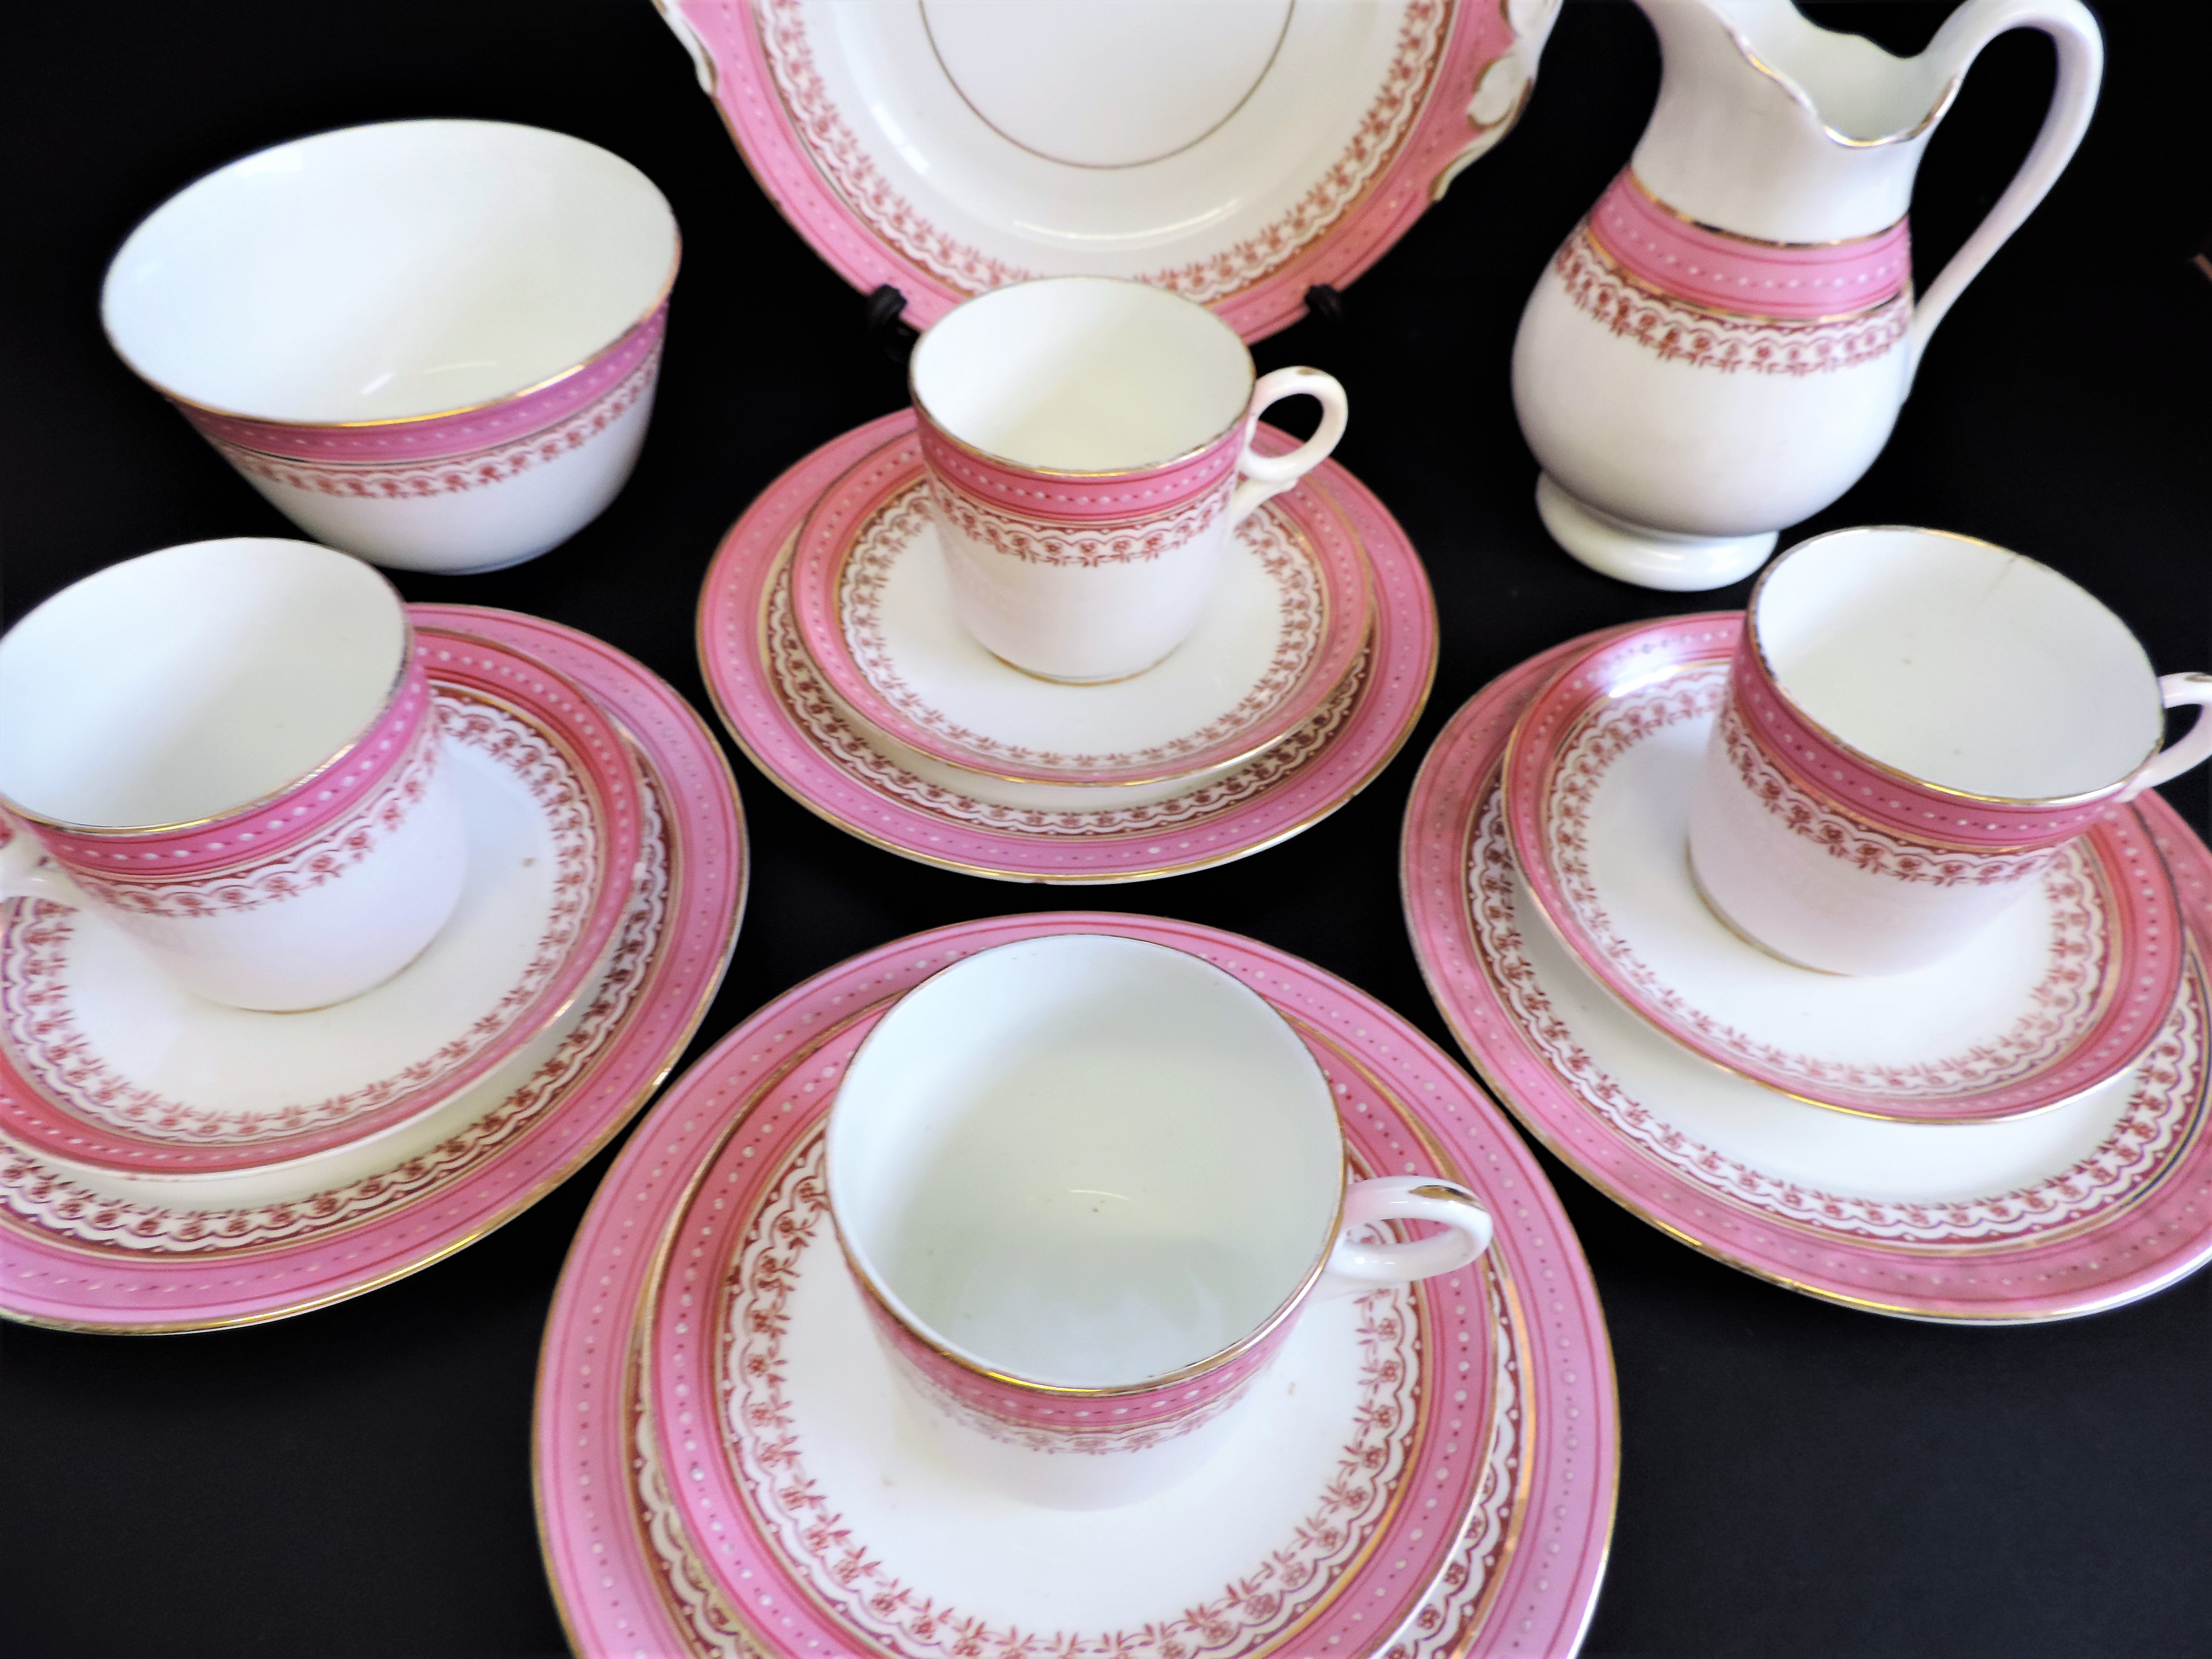 Vintage 19 piece Porcelain Breakfast/Tea Set for 4 People - Image 21 of 24